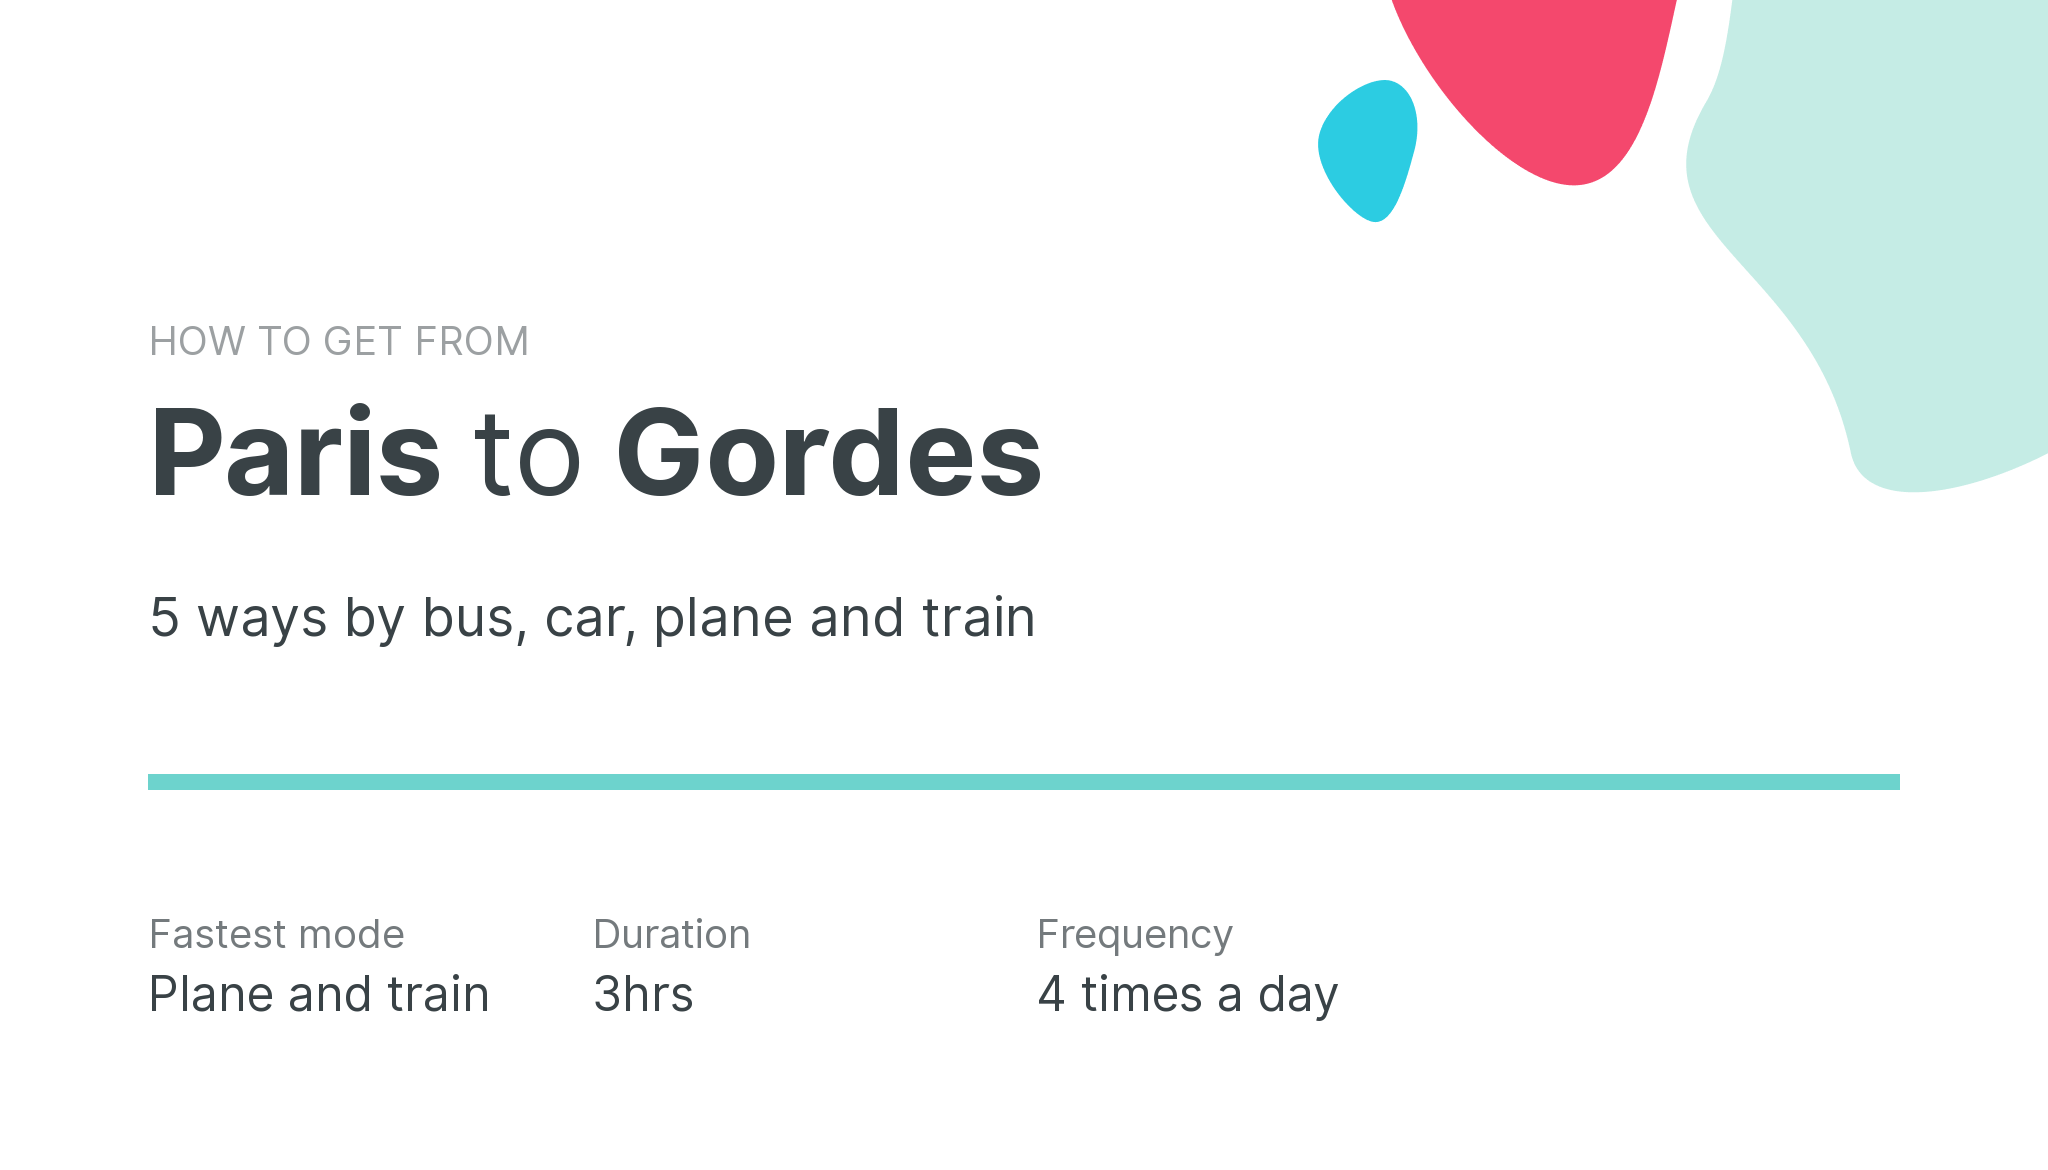 How do I get from Paris to Gordes